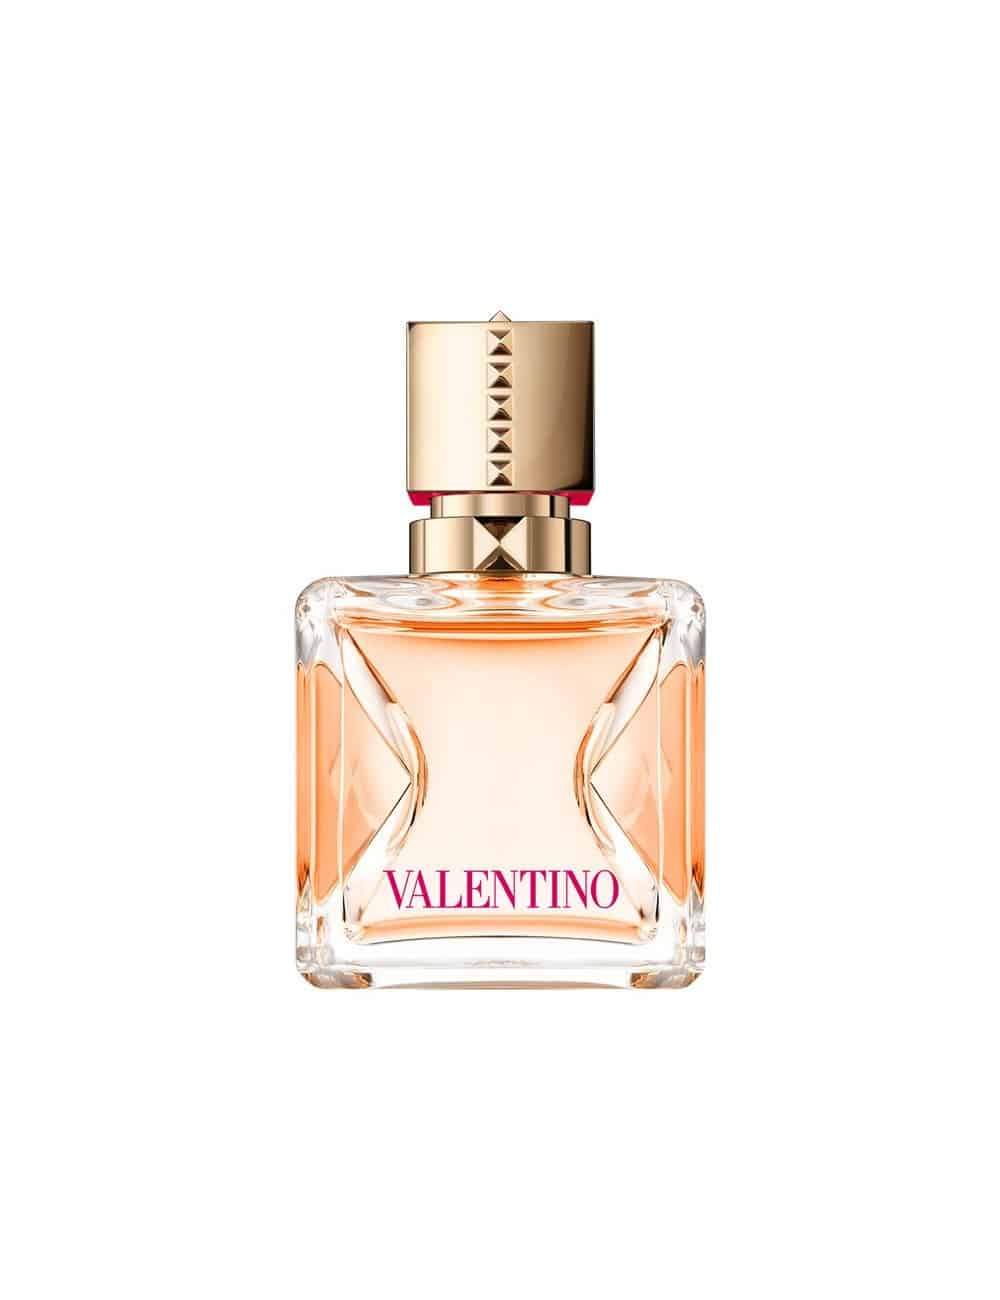 ולנטינו ווקה ויוה אדפ אינטנס 100 מל Valentino Voce Viva Intensa Eau De Parfum 100ML For Women